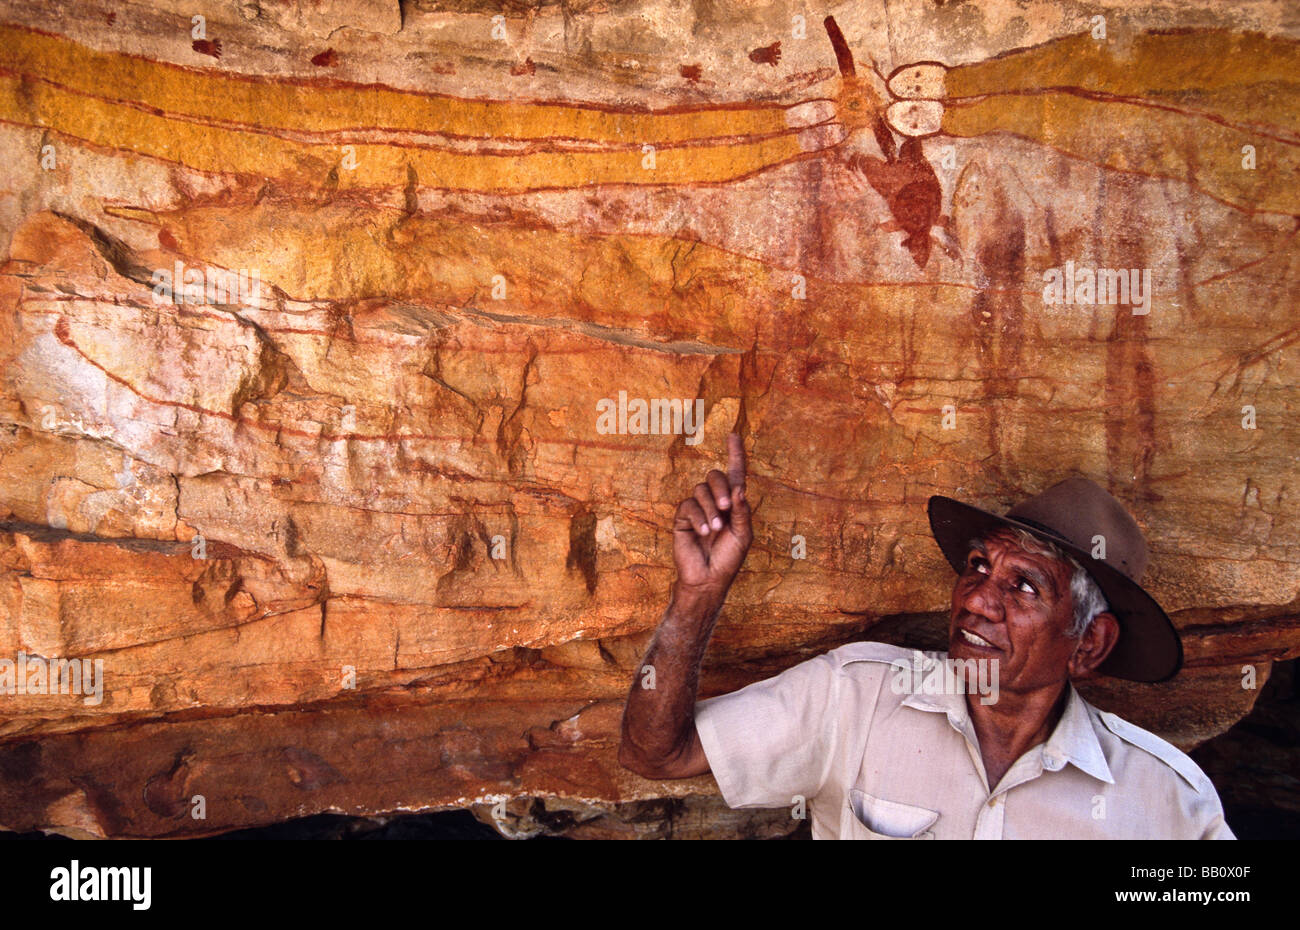 Aboriginal art site Kimberley Australia Stock Photo